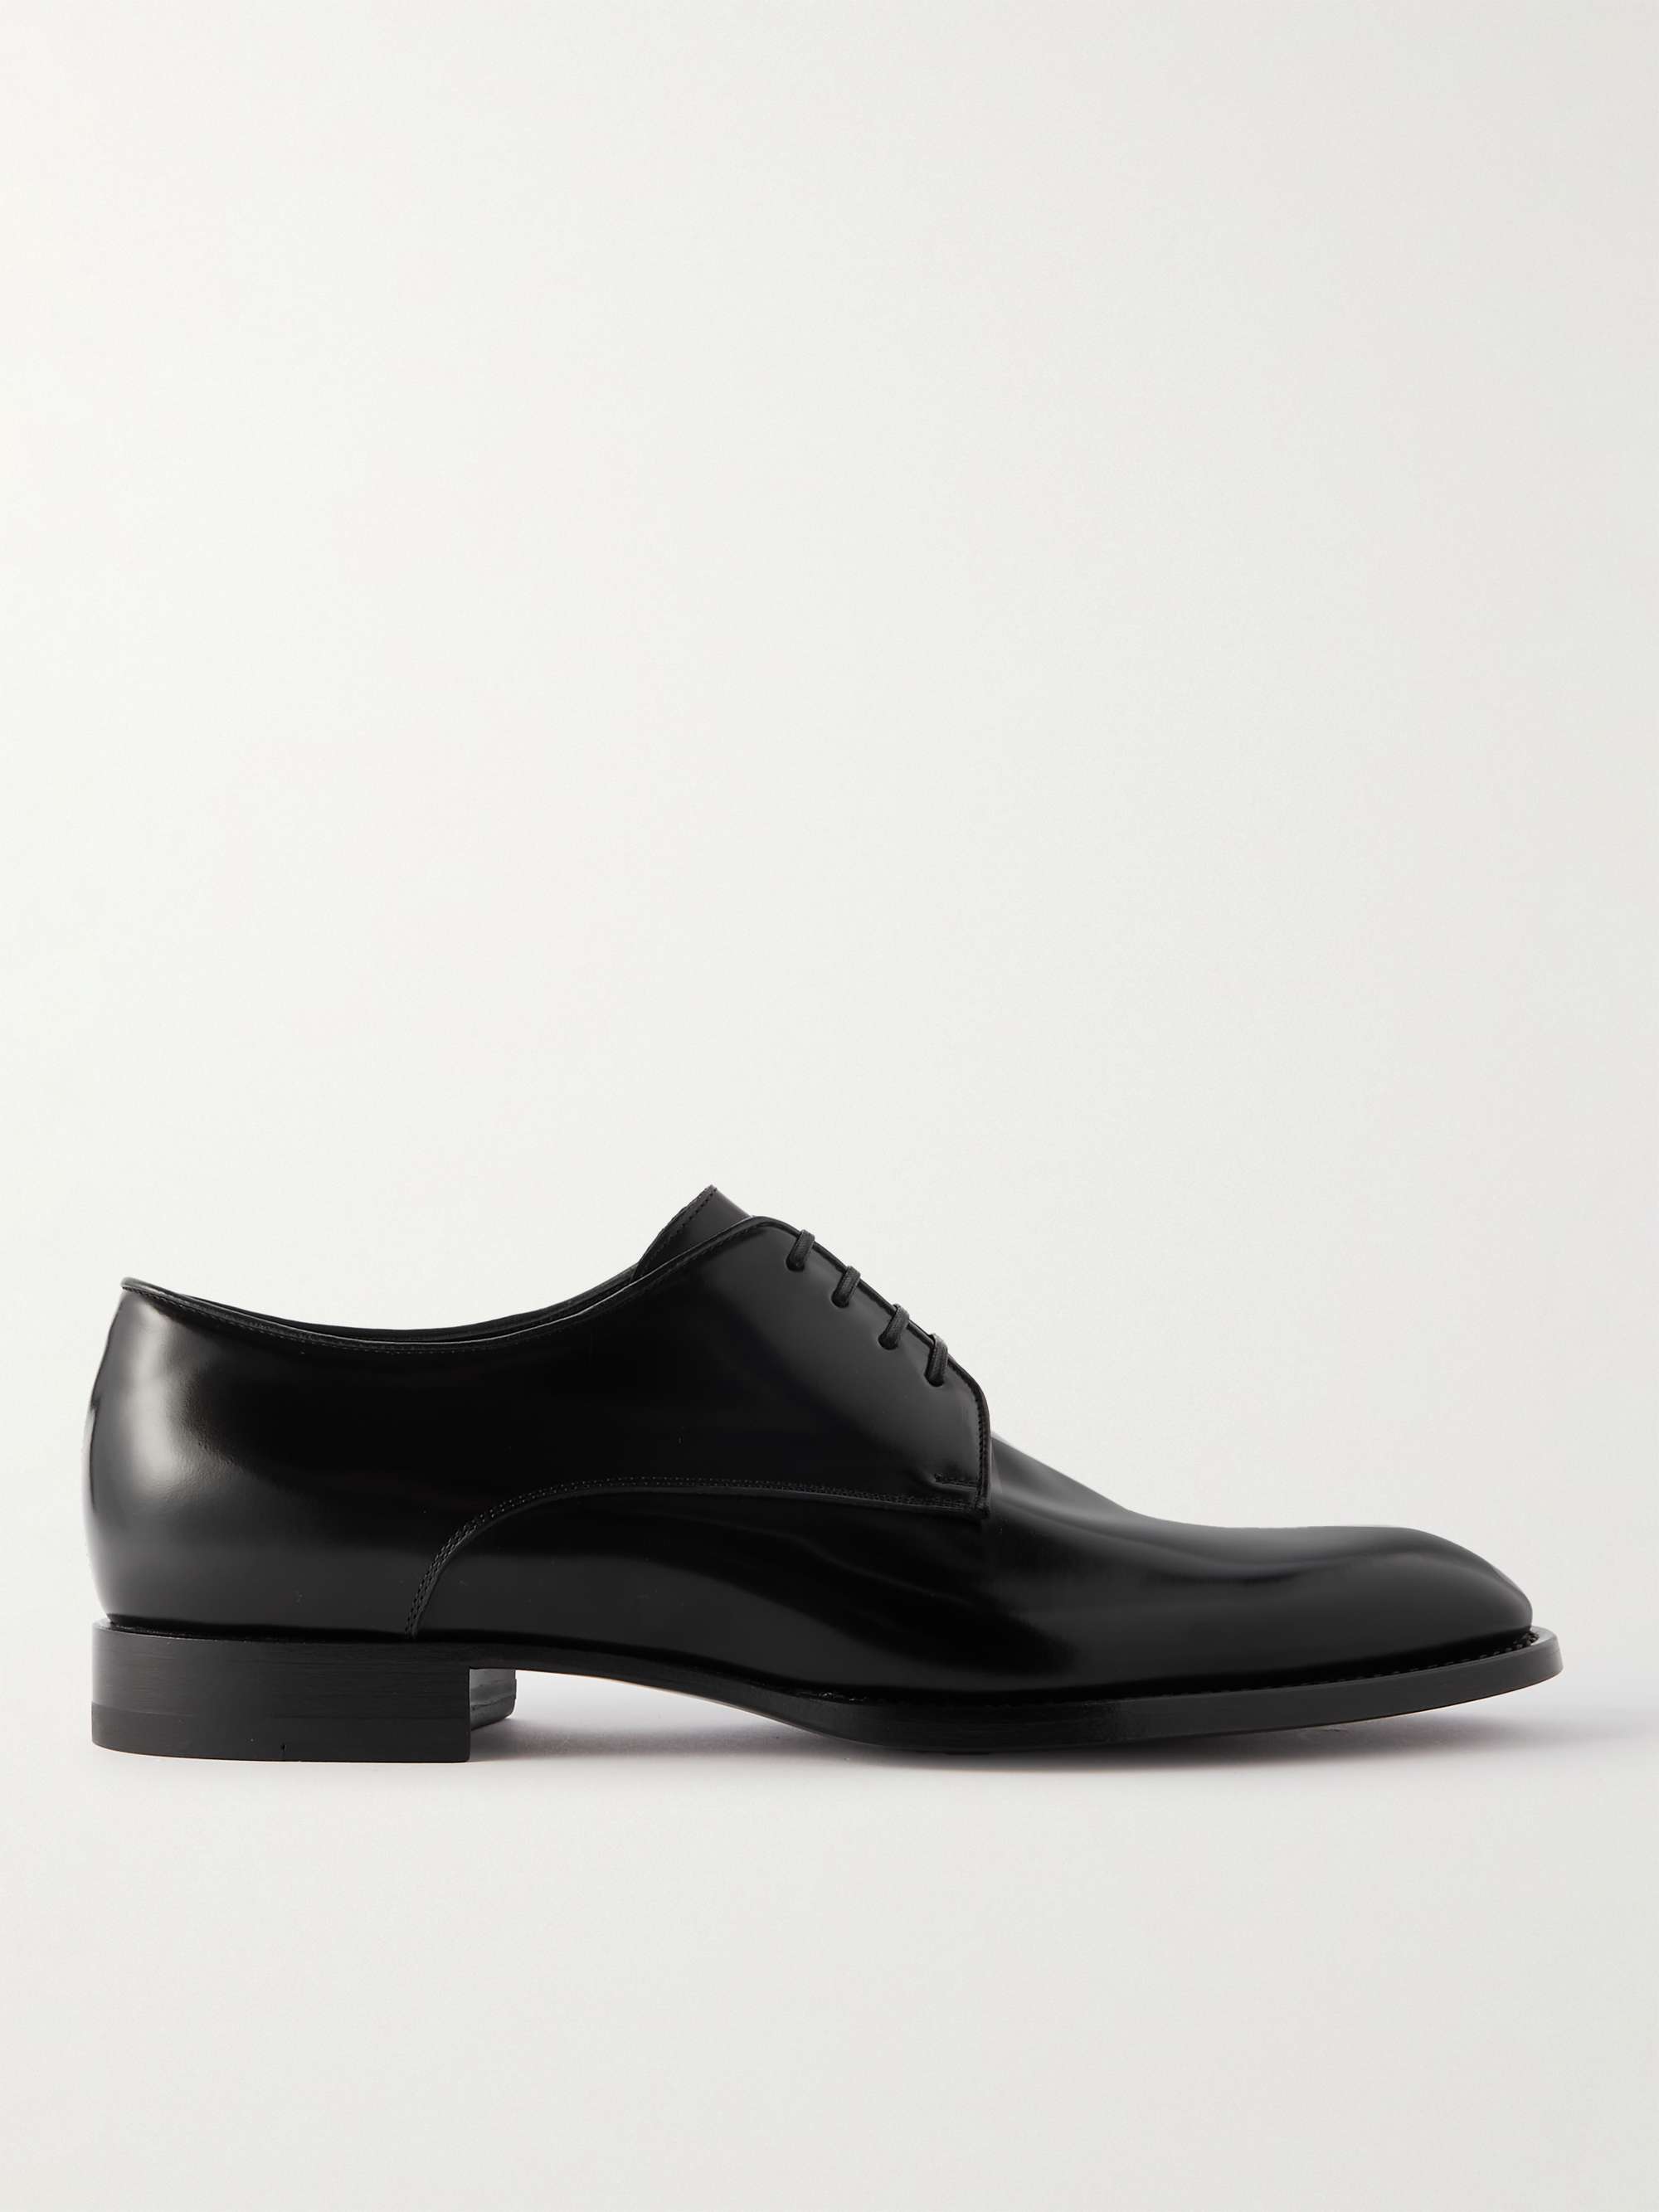 CELINE HOMME Leather Derby Shoes for Men | MR PORTER